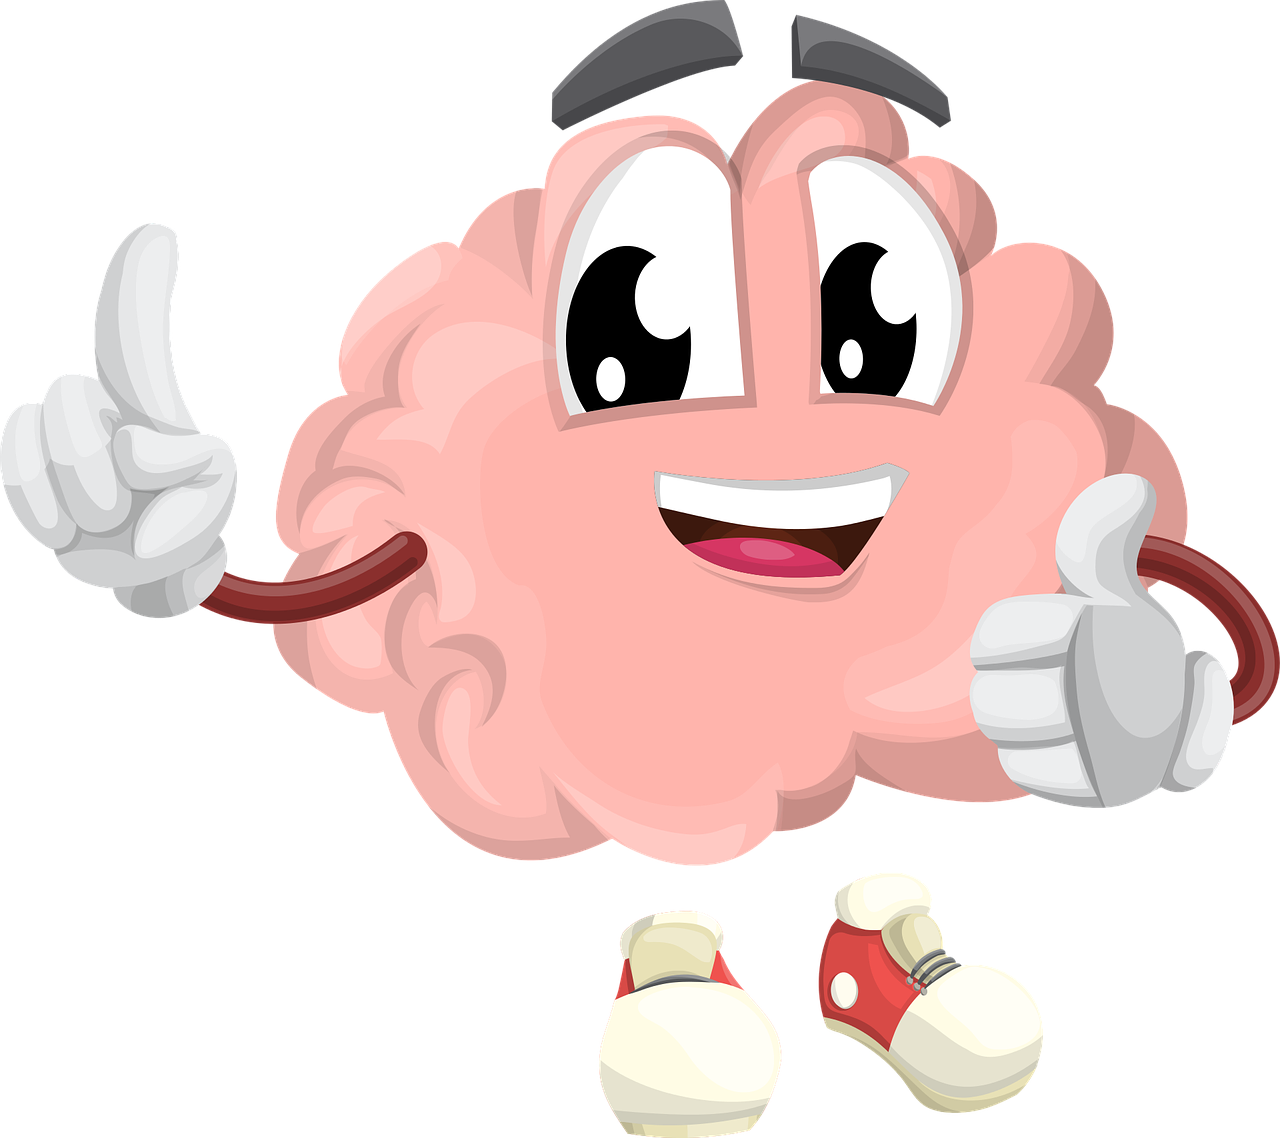 Eine Grafik, die ein Gehirn als Gesicht von einer Zeichentrickfigur zeigt. Sie zeigt einen Daumen hoch und läuft auf etwas zu.